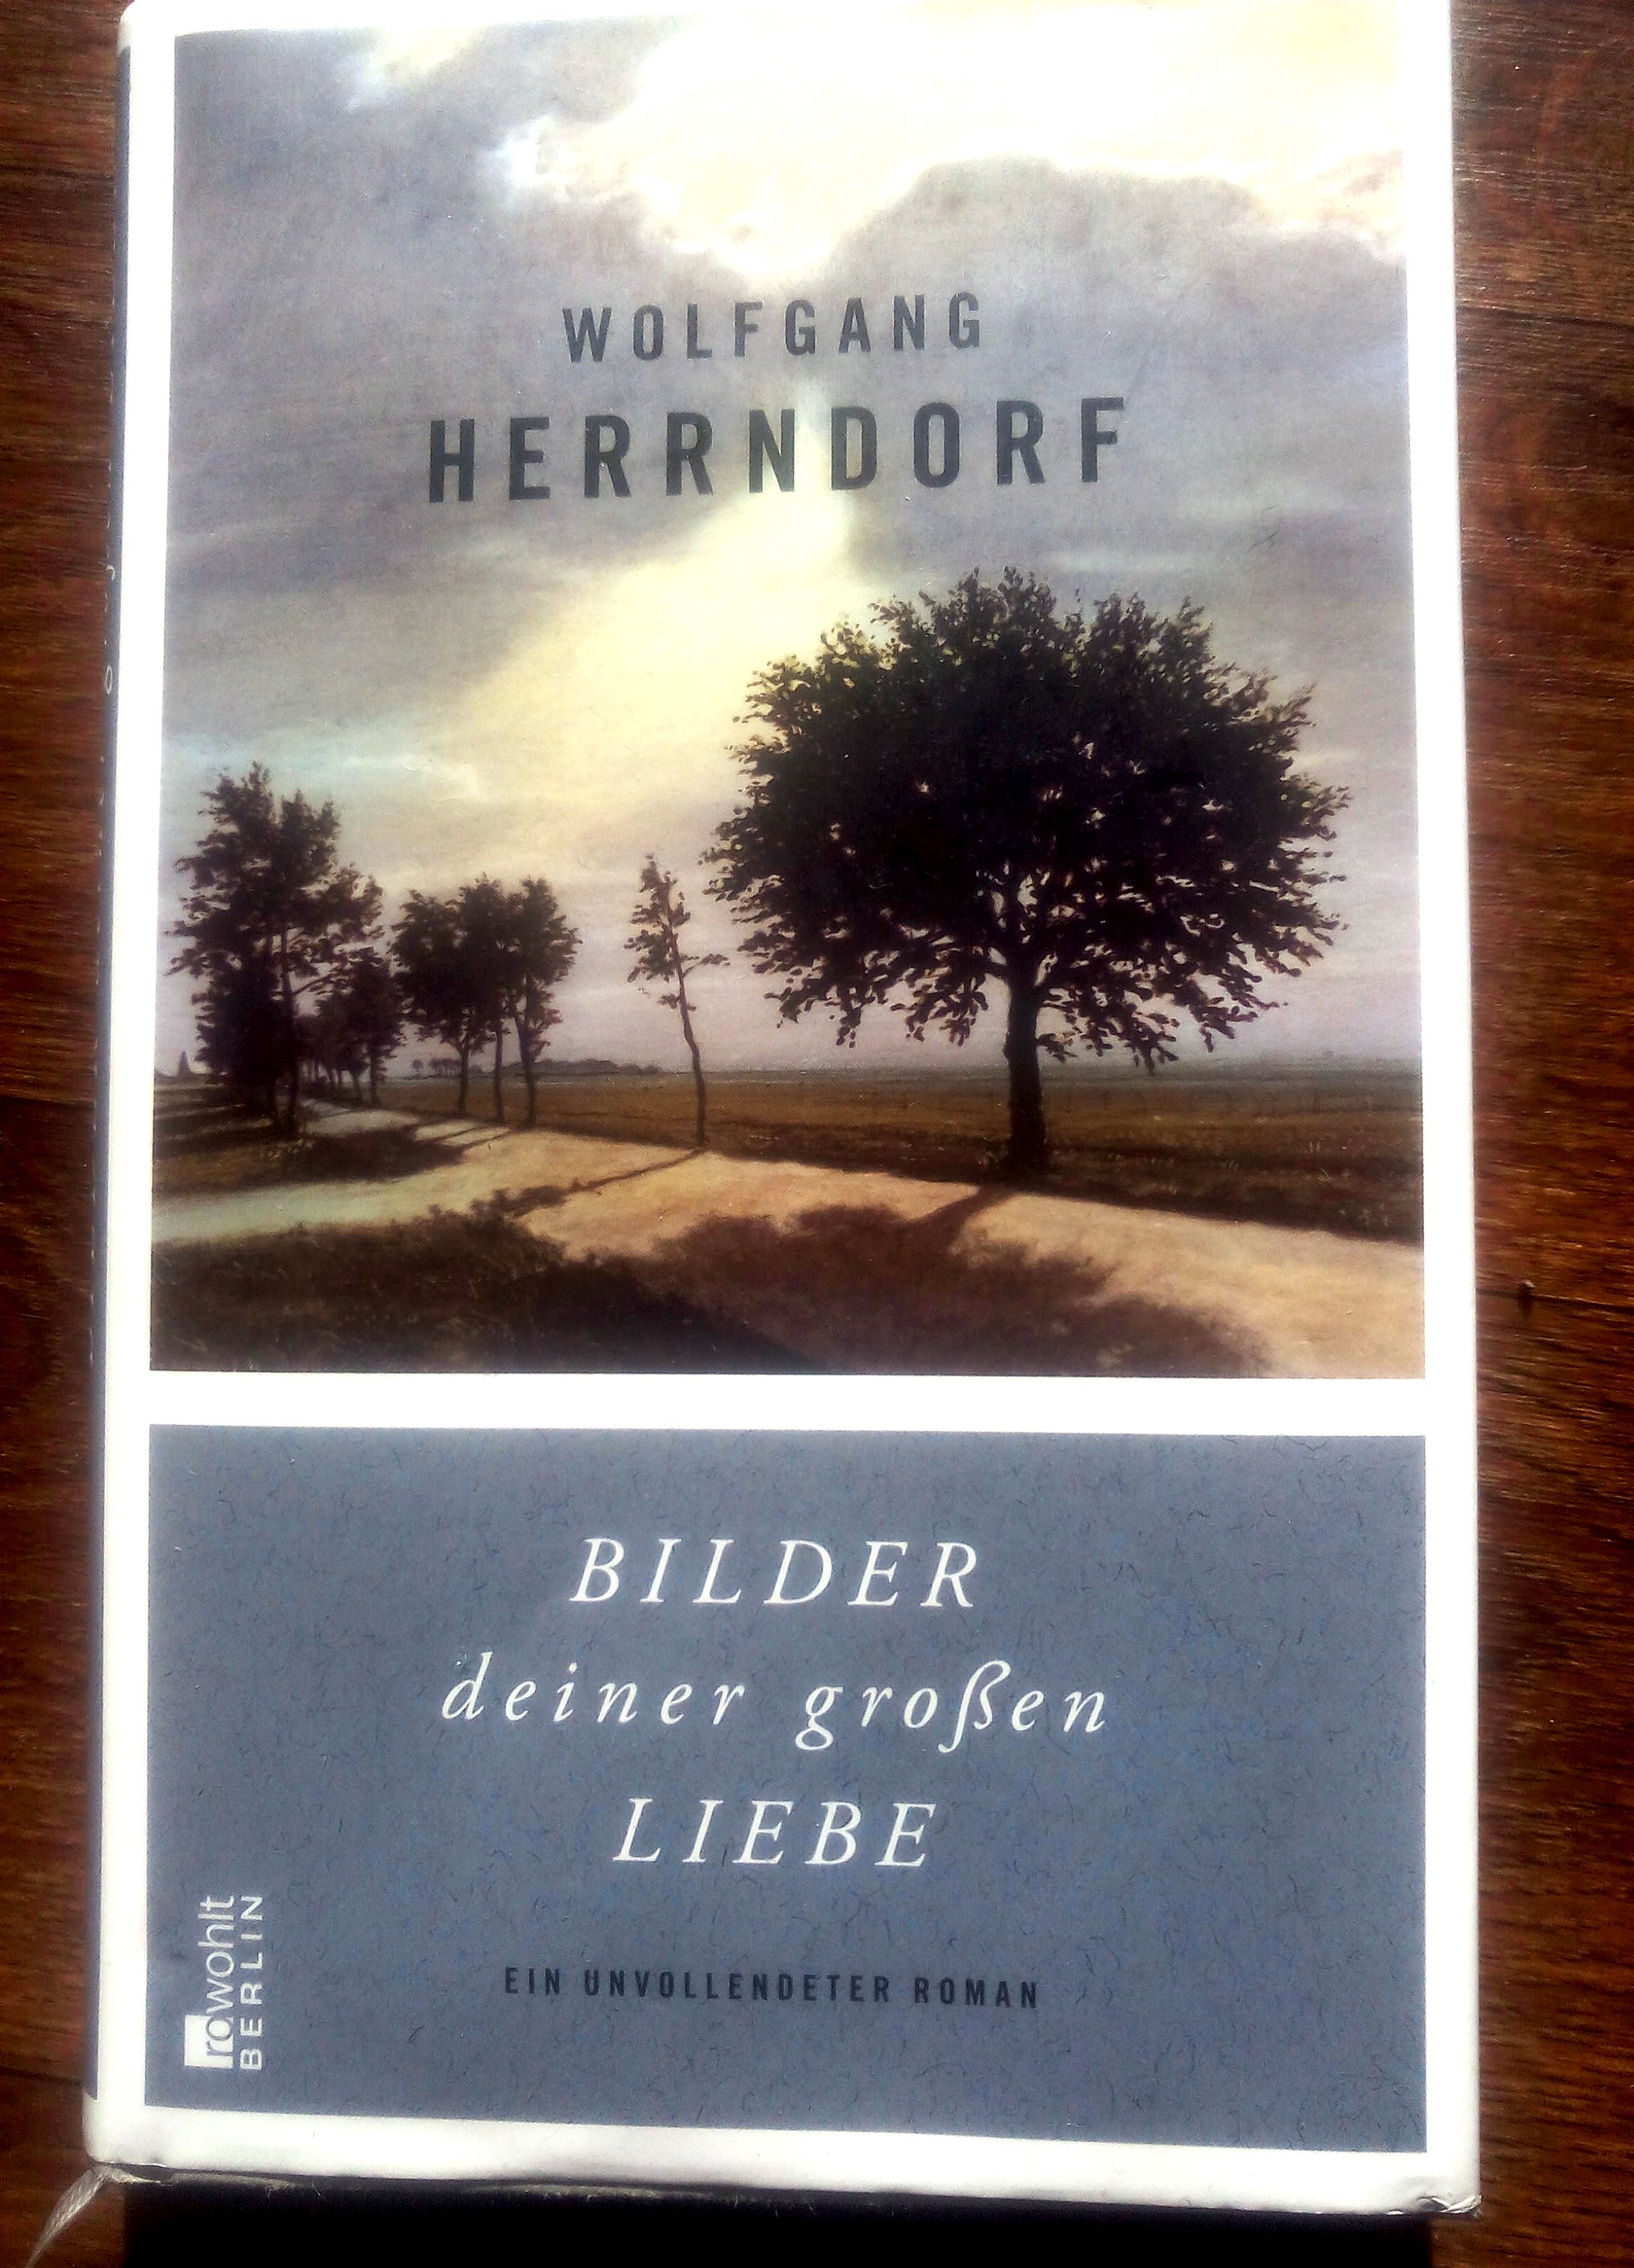 Wolfgang Herrndorf "Bilder deiner groÃŸen Liebe"